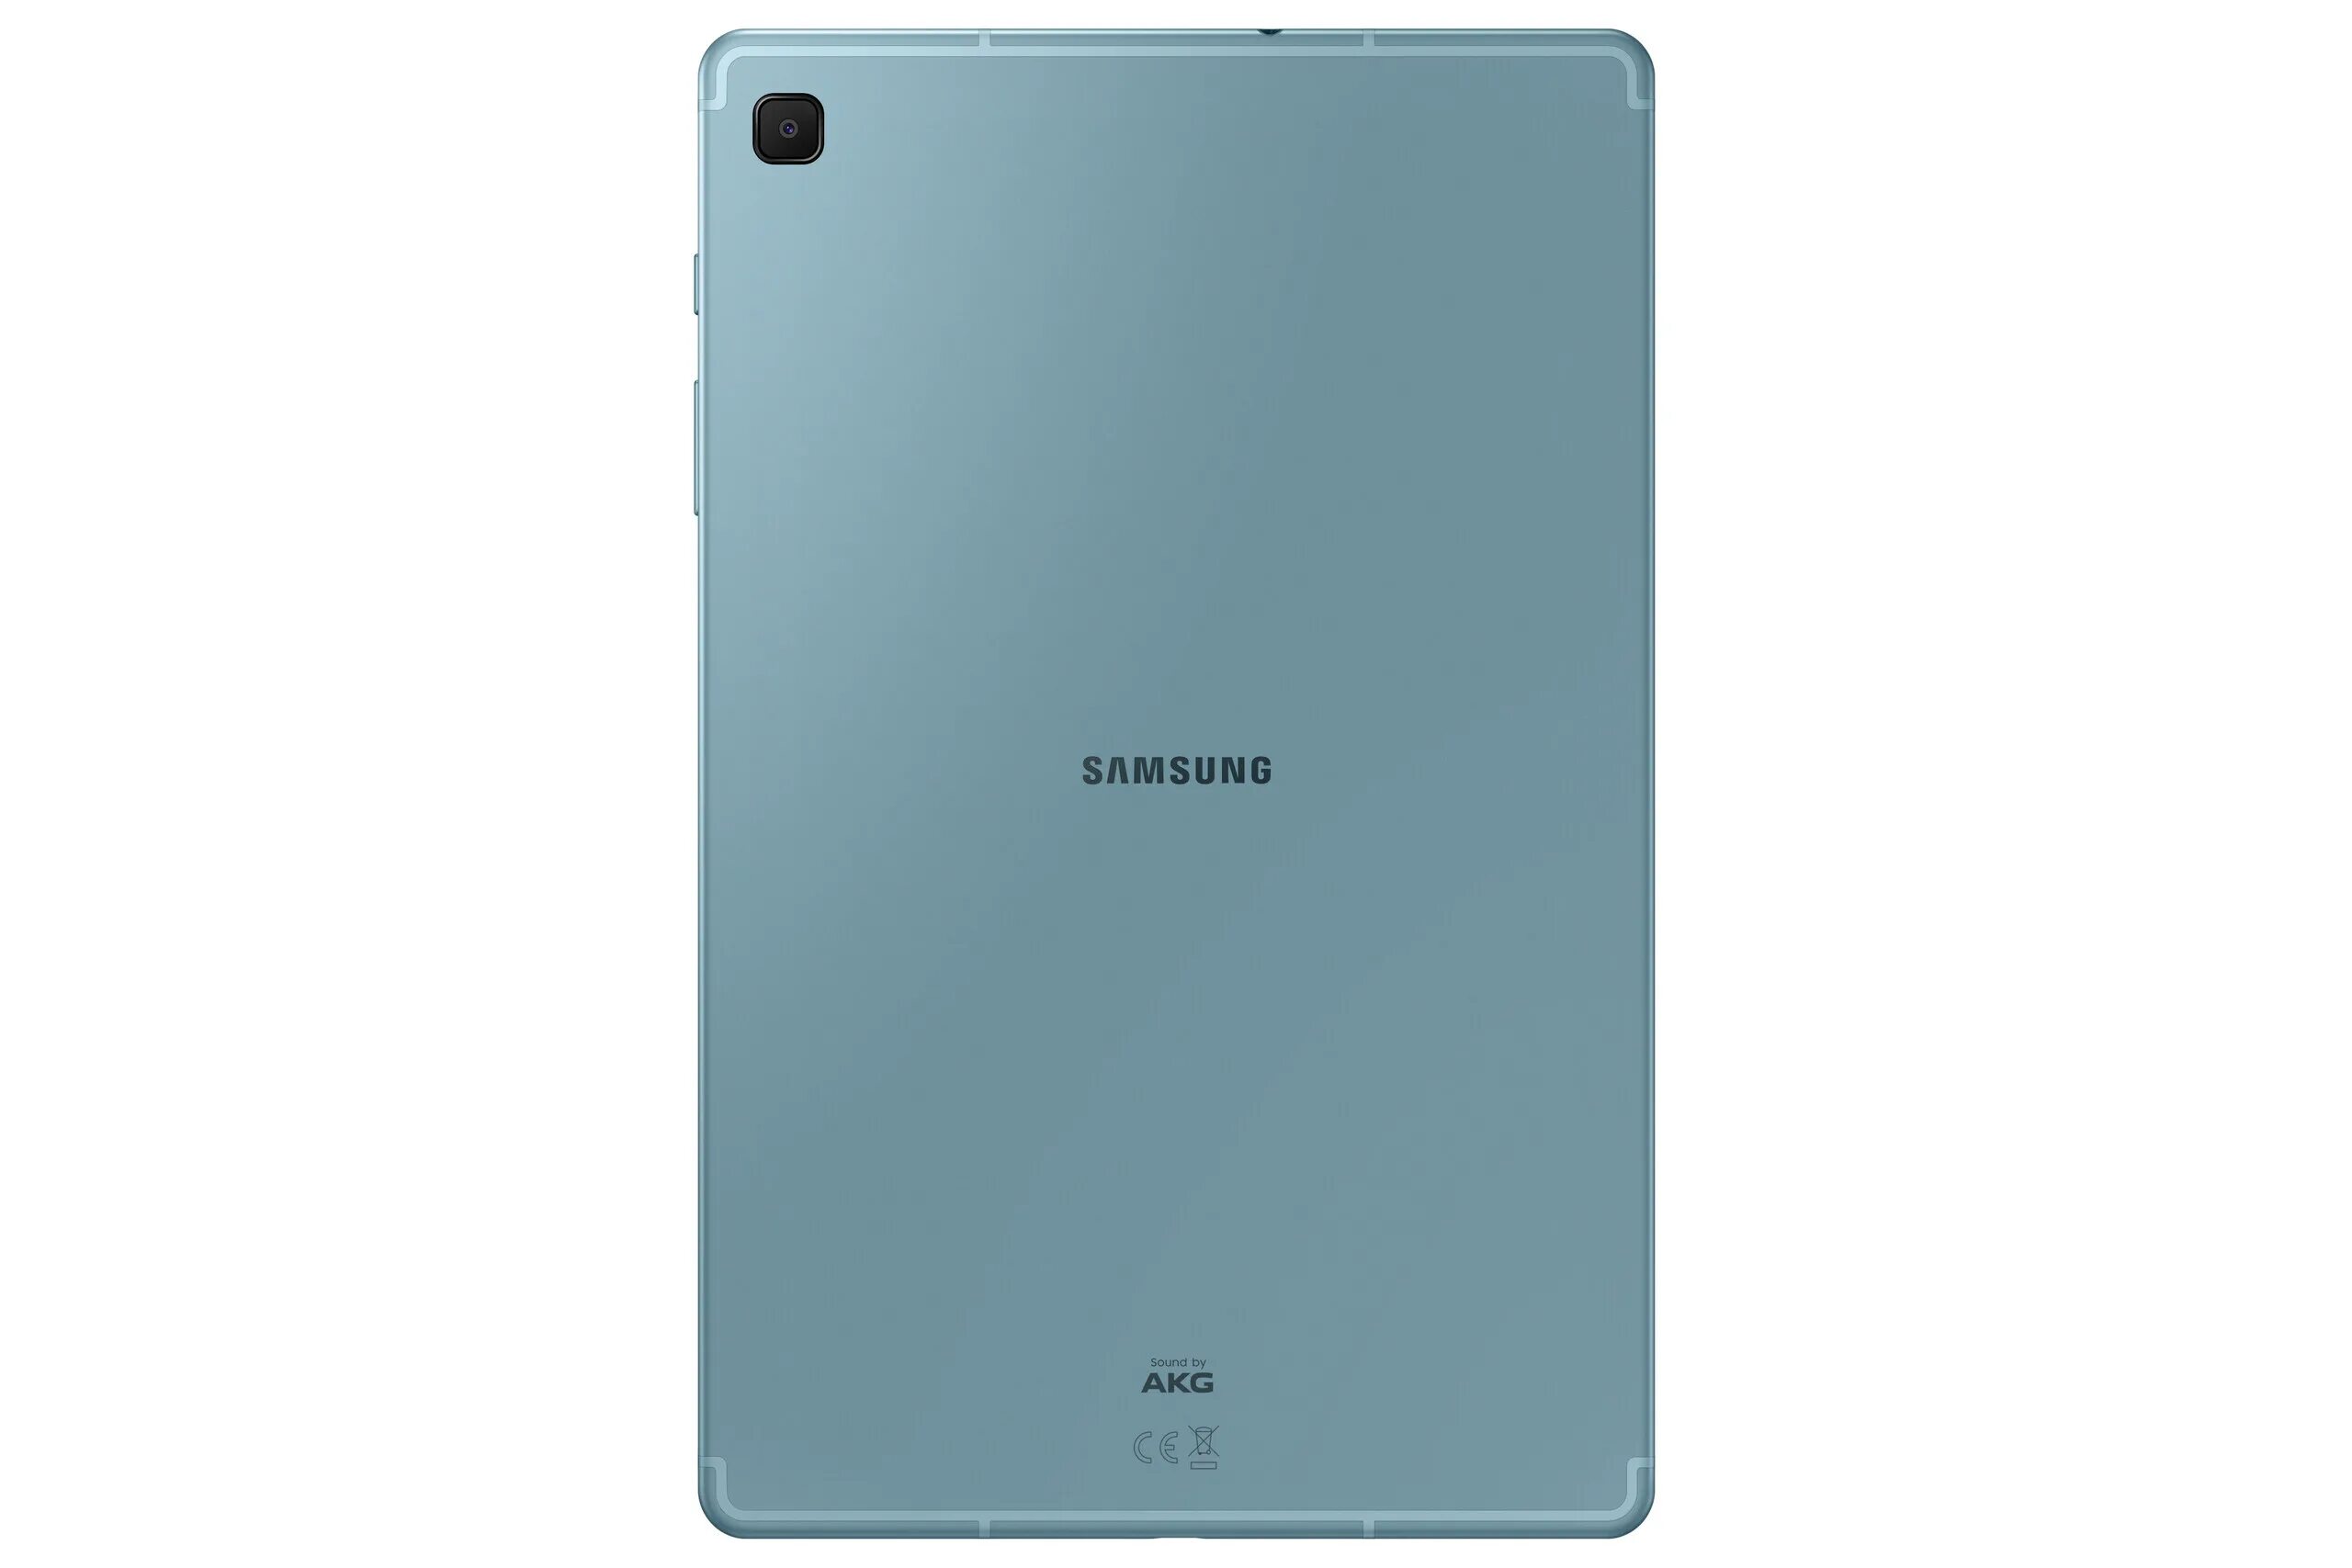 Планшеты galaxy 128gb. Планшет Samsung Galaxy Tab s6 Lite 10.4 SM-p615 64gb LTE (2020), серый. Samsung Galaxy Tab s6 Lite 10.4 SM-p615. Samsung Galaxy Tab s6 Lite SM-p615n 9611 (. Планшет Samsung Galaxy Tab s6 Lite SM-p615n.